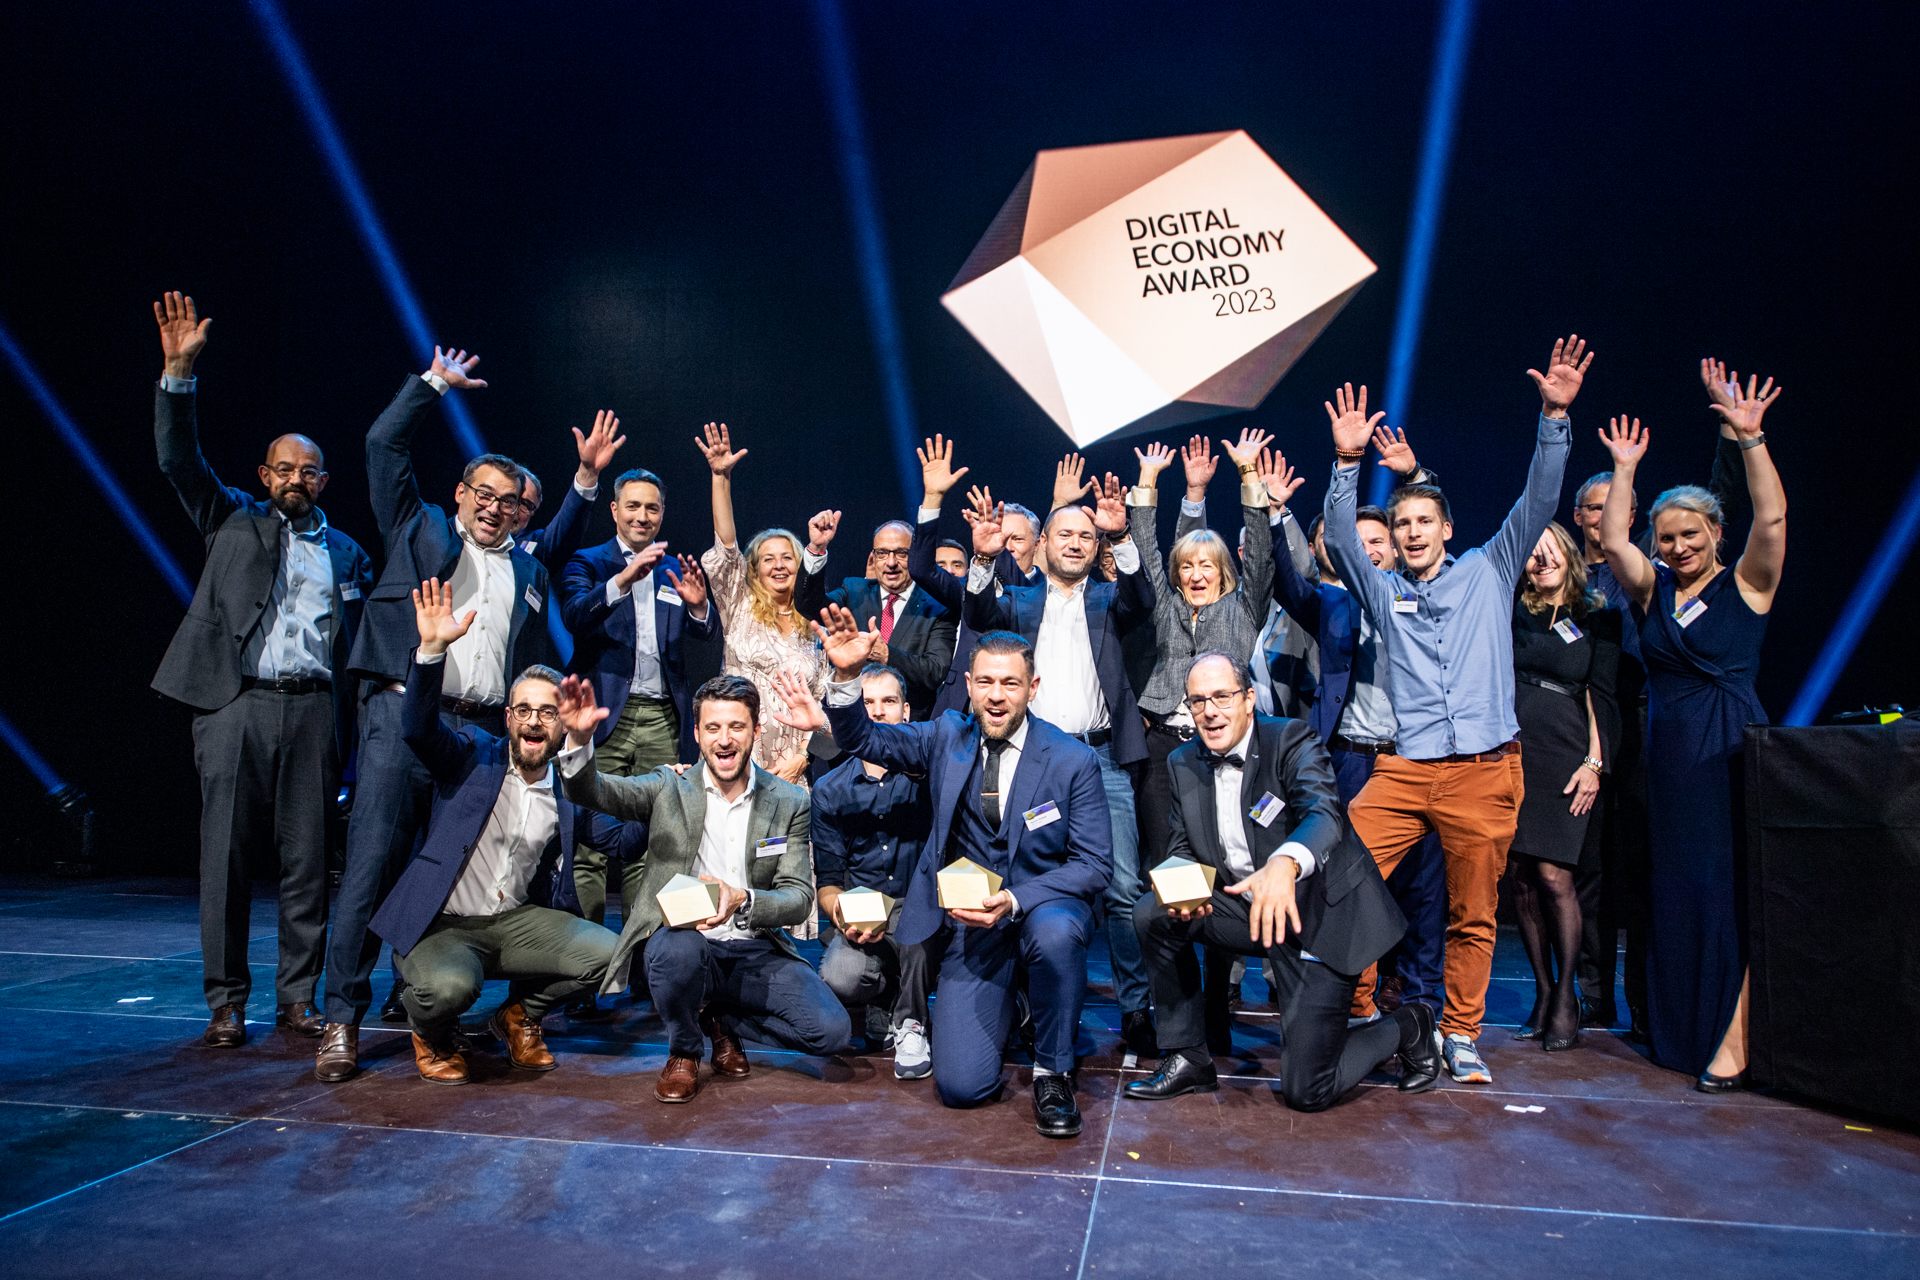 Dijital Ekonomi Ödülü: 2023 ödüllerinin sunumu 16 Kasım'da İsviçre'nin Zürih kentindeki Hallenstadion'da gerçekleşti.